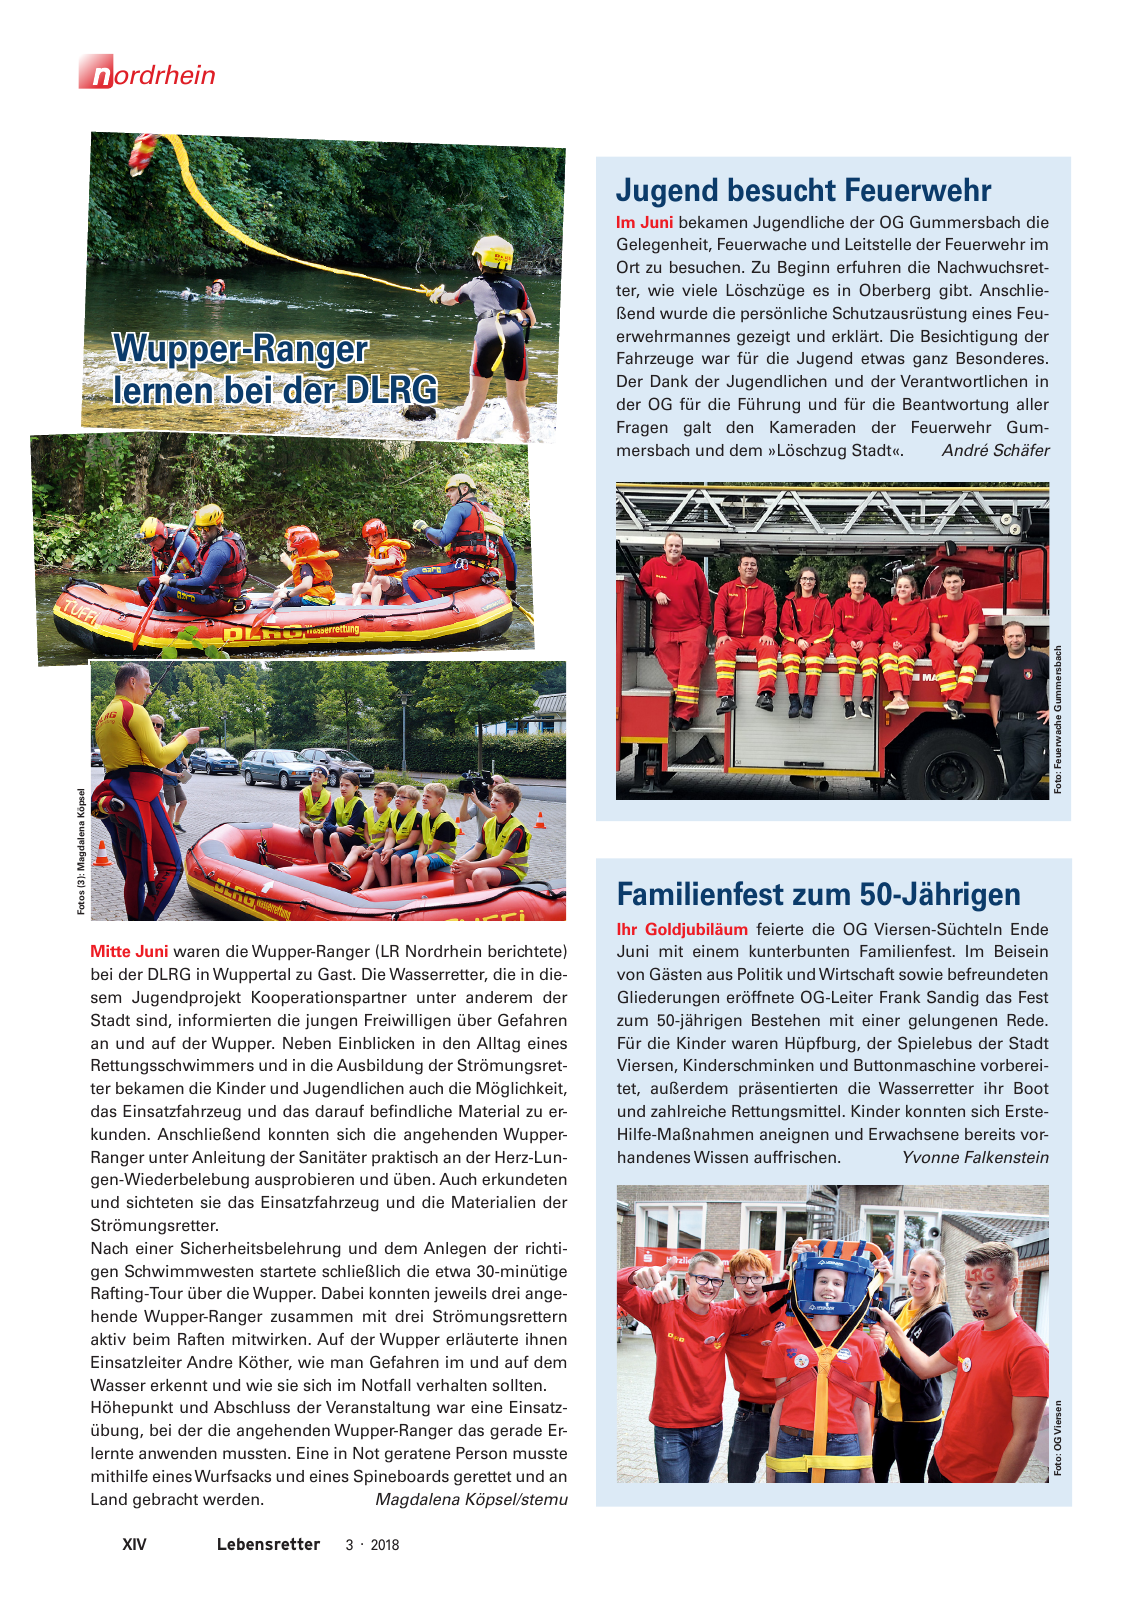 Vorschau Lebensretter 3/2018 - Regionalausgabe Nordrhein Seite 16